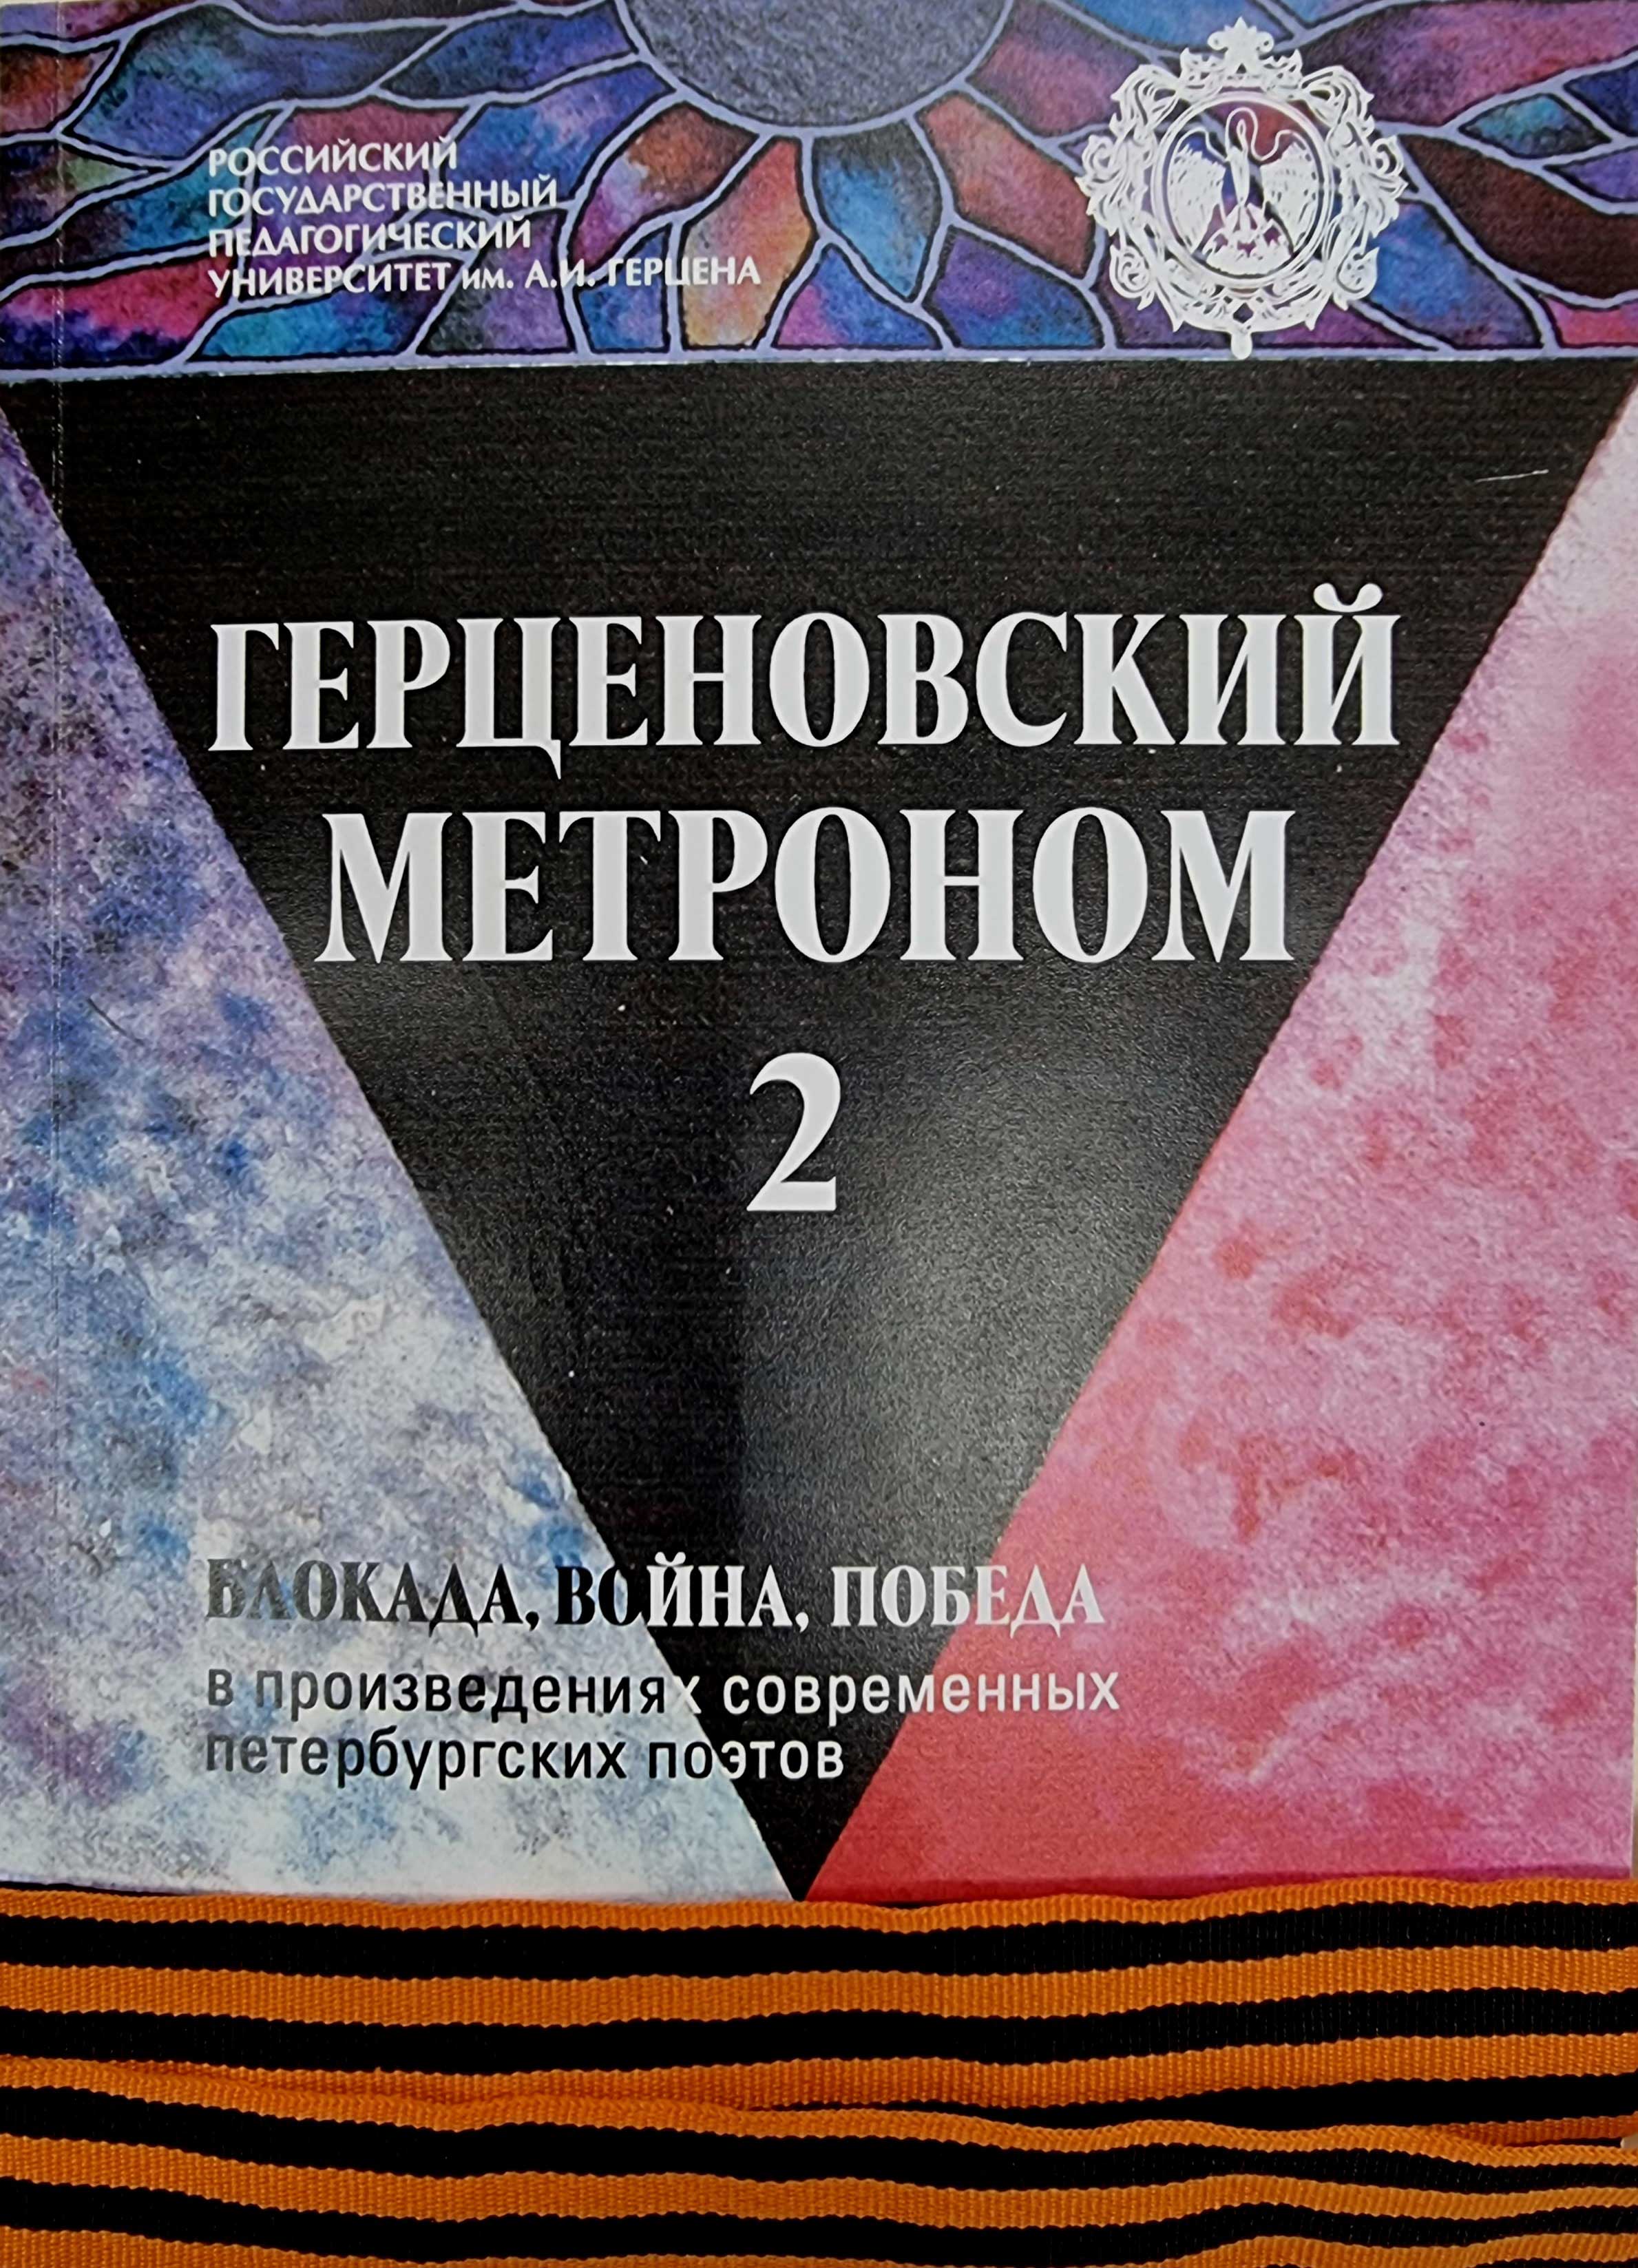 22 апреля в Библиотеке Ленина (ул. Воскова, д.2) состоялся литературно-музыкальный вечер памяти, посвященный 77-летию Победы в Великой Отечественной войне 1941-1945 гг.